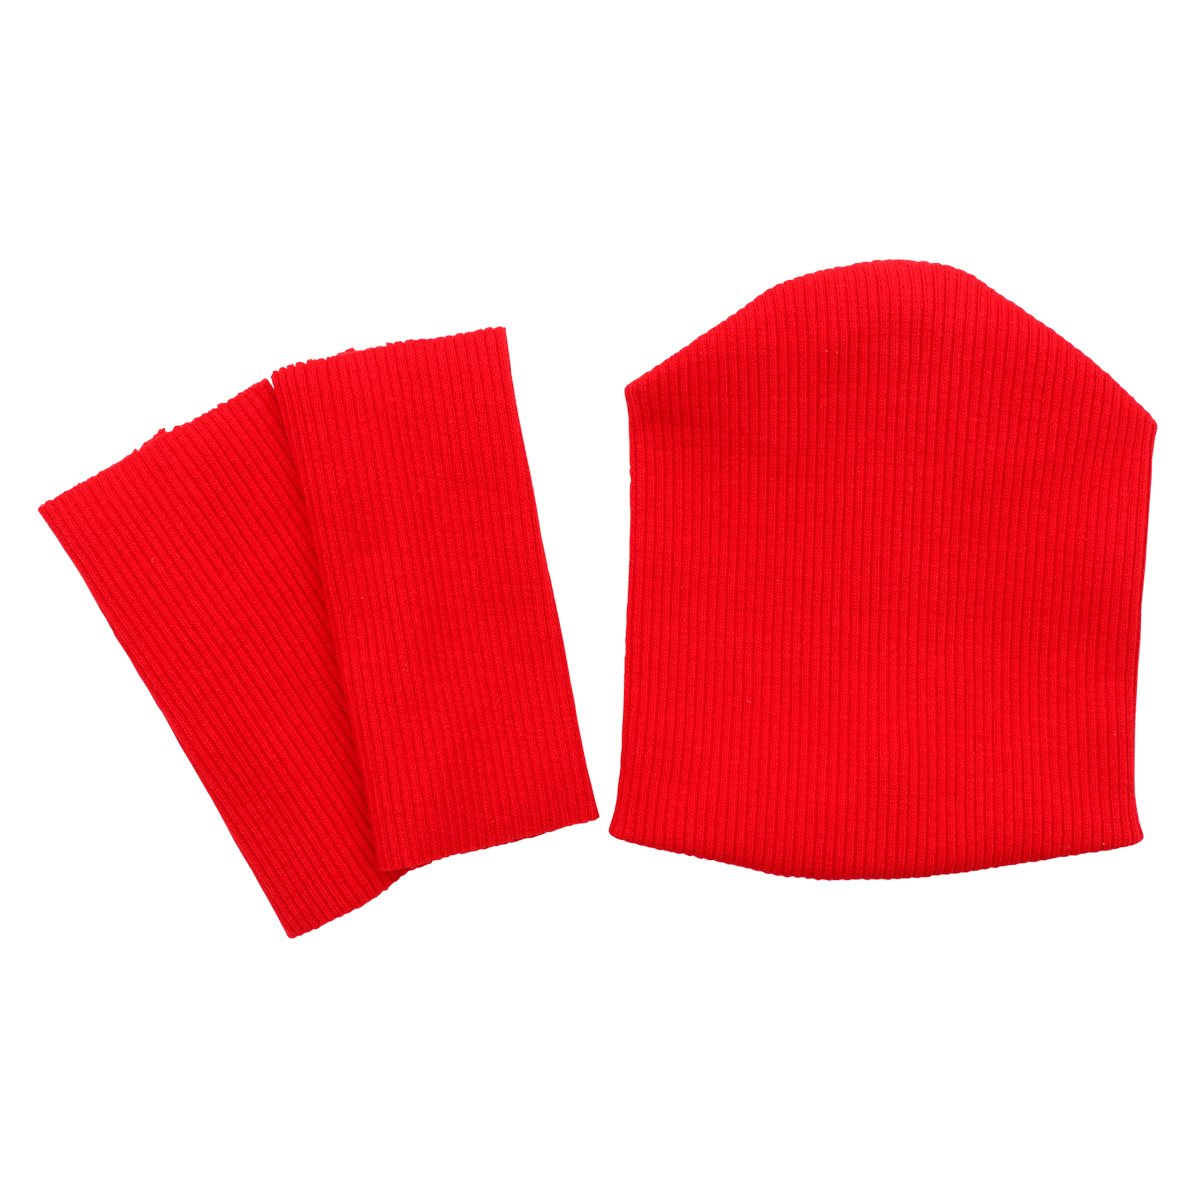 28875 Комплект одежды для игрушек красный: шапка (9,5*10 см), гетры (3*8 см) гетры nike classic красный